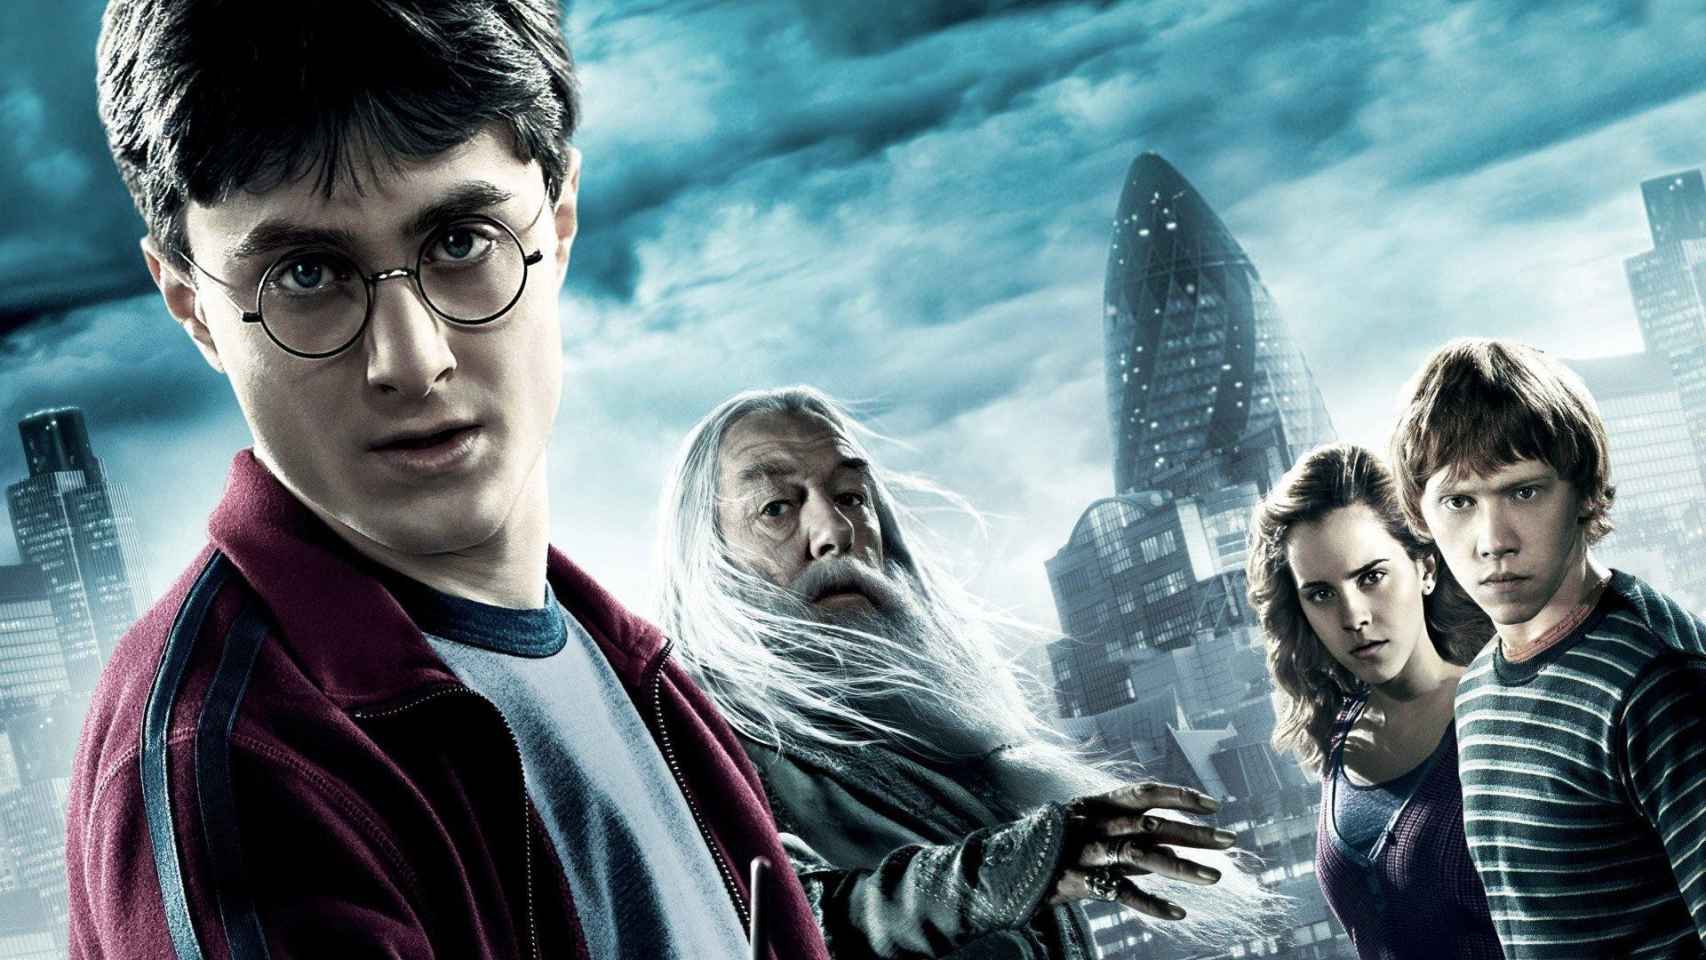 Personajes de la saga literaria y cinematográfica Harry Potter / J.K. ROWLING